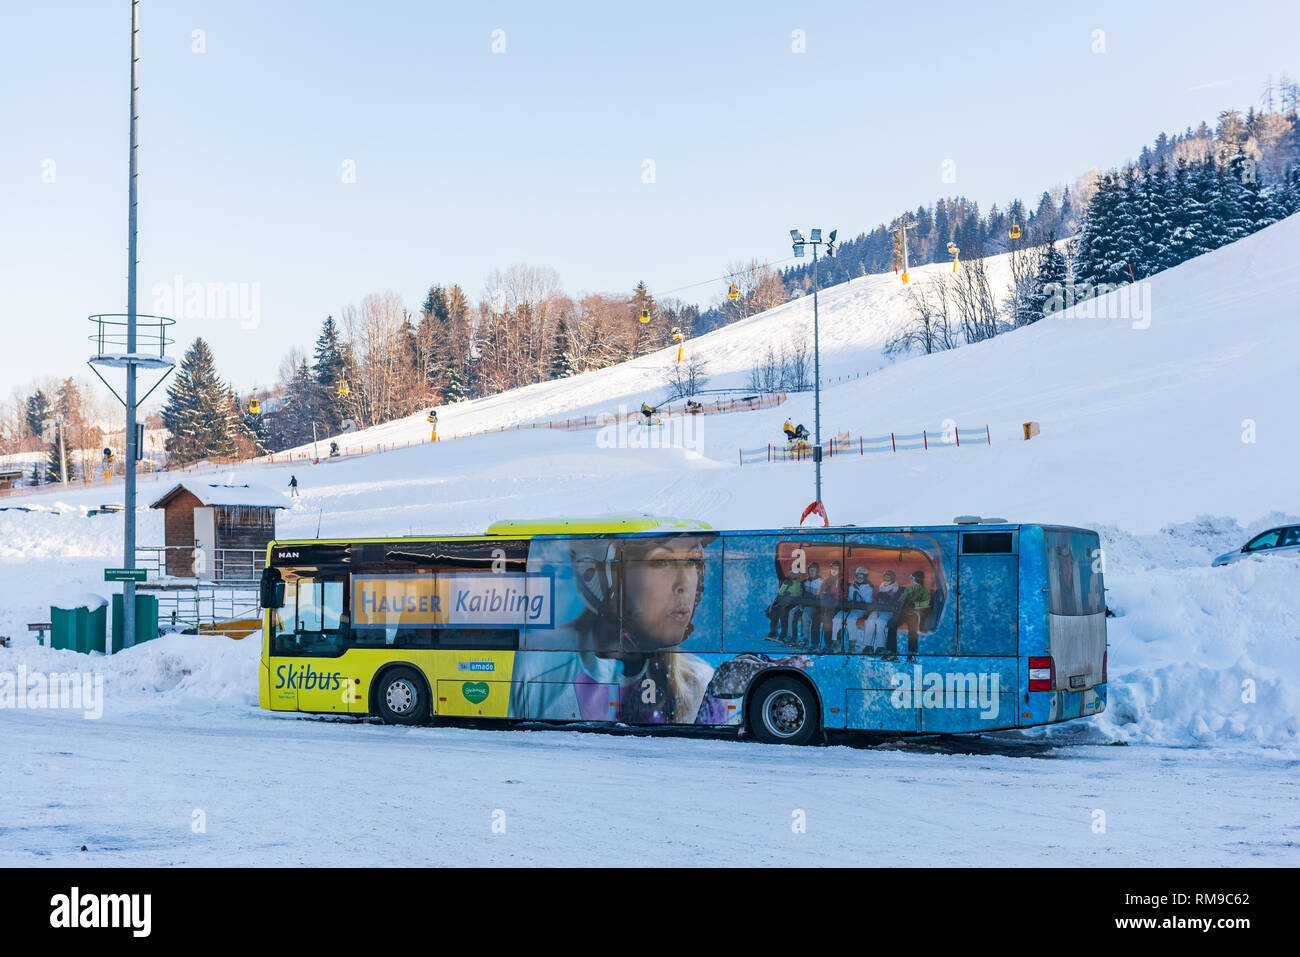 MAN Ski bus at ski region Schladming Dachstein - Hauser Kaibling with mountain at the background. Ski Amade, Liezen District, Styria, Austria, Europe Stock Photo